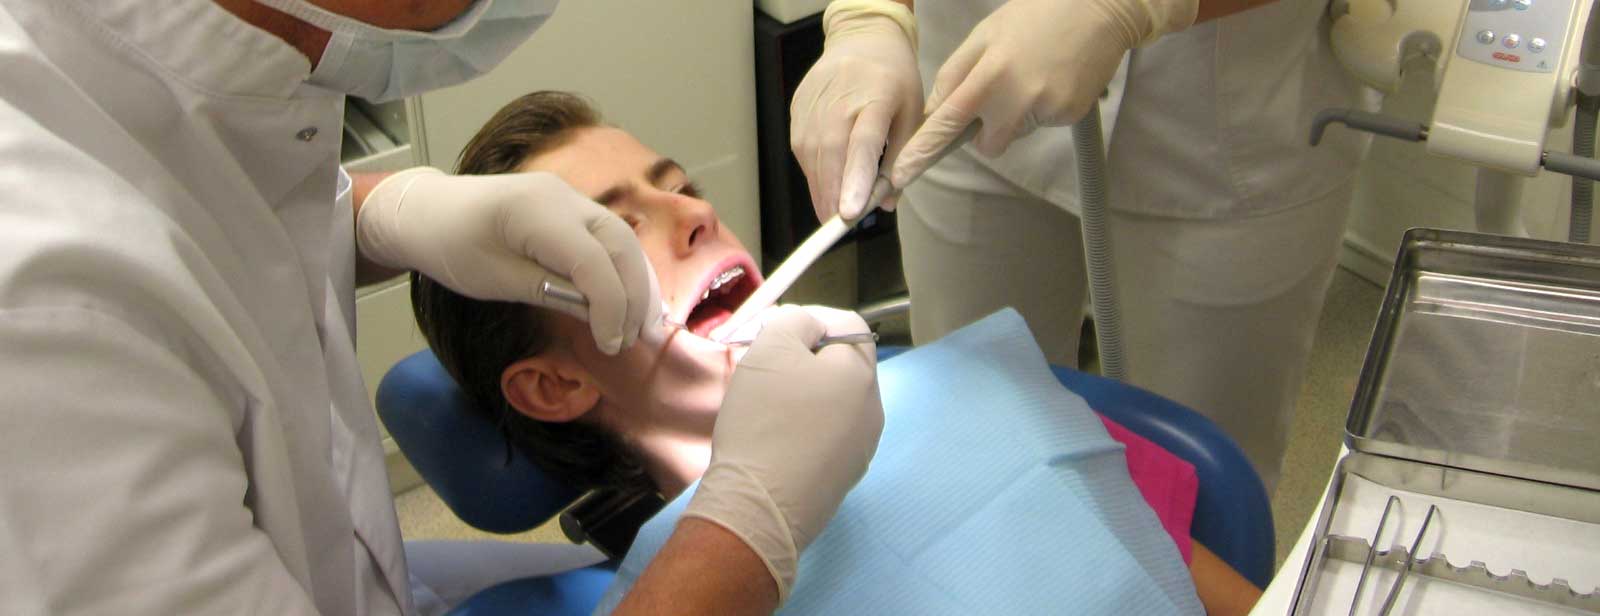 Tandplak en tandsteen verwijderen